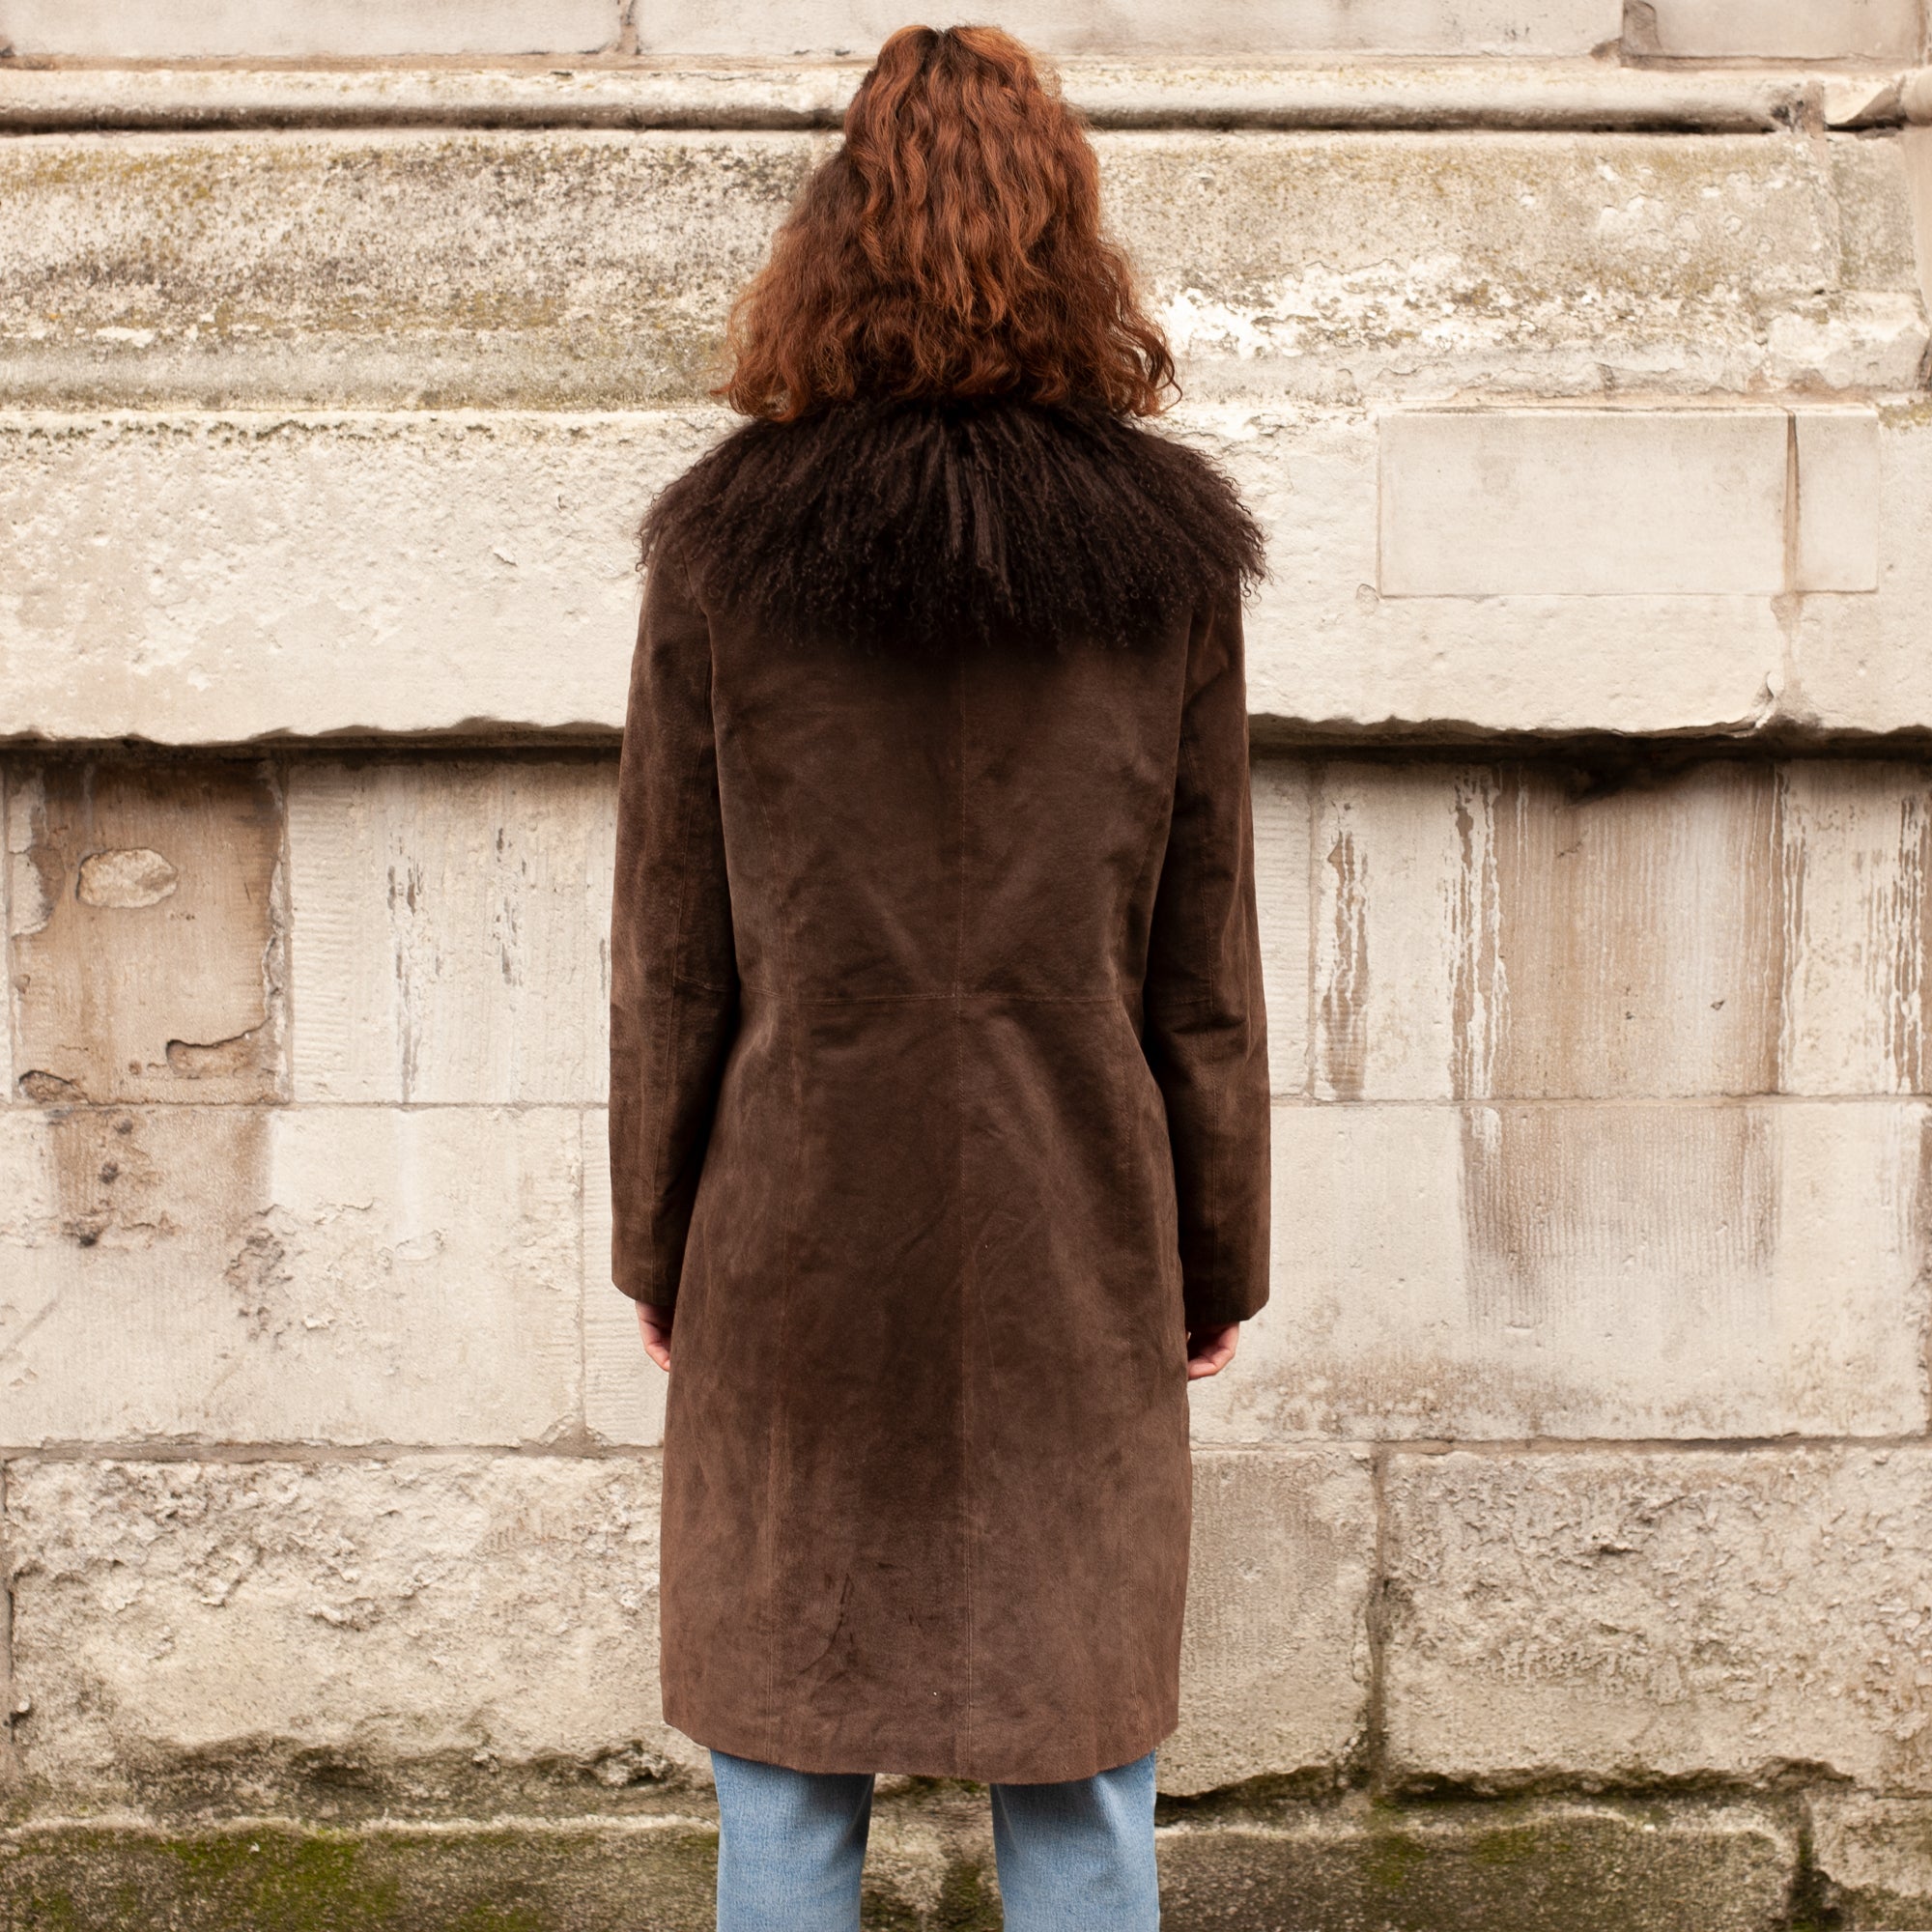 Fur Trim Coat (Brown) UK 8-12